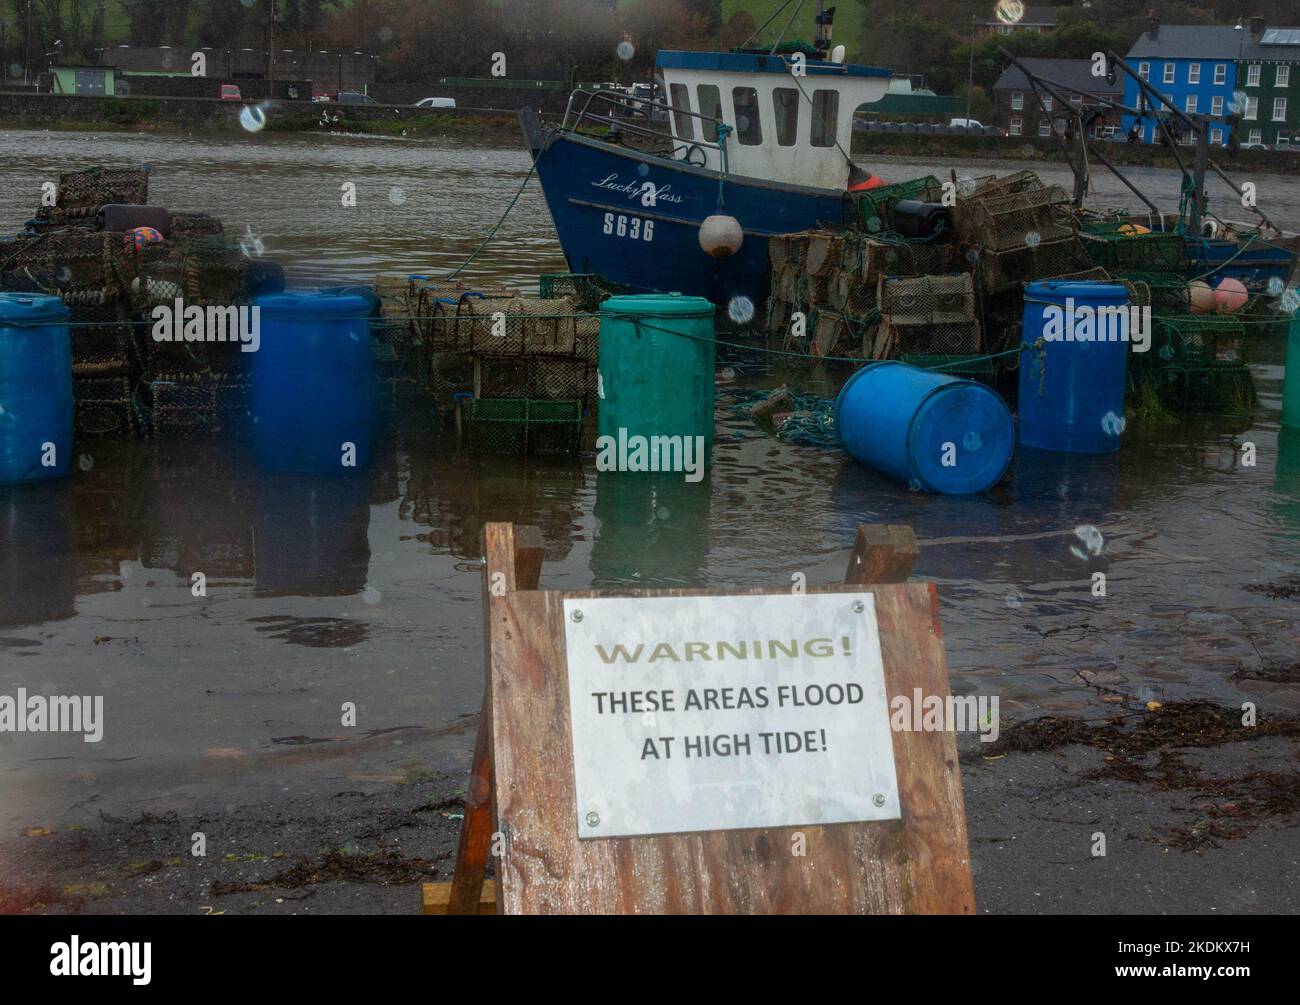 Lunes 7 Nov 2022 Bantry West Cork Irlanda; Preperaciones de inundación están en marcha en Bantry con el Consejo del Condado de Cork colocando bombas portátiles en el toen, así como poniendo sacos de arena fr buisnesses y residentes, con marea alta prevista poco después DE 4pm. Crédito ED/ Alamy Live News Foto de stock